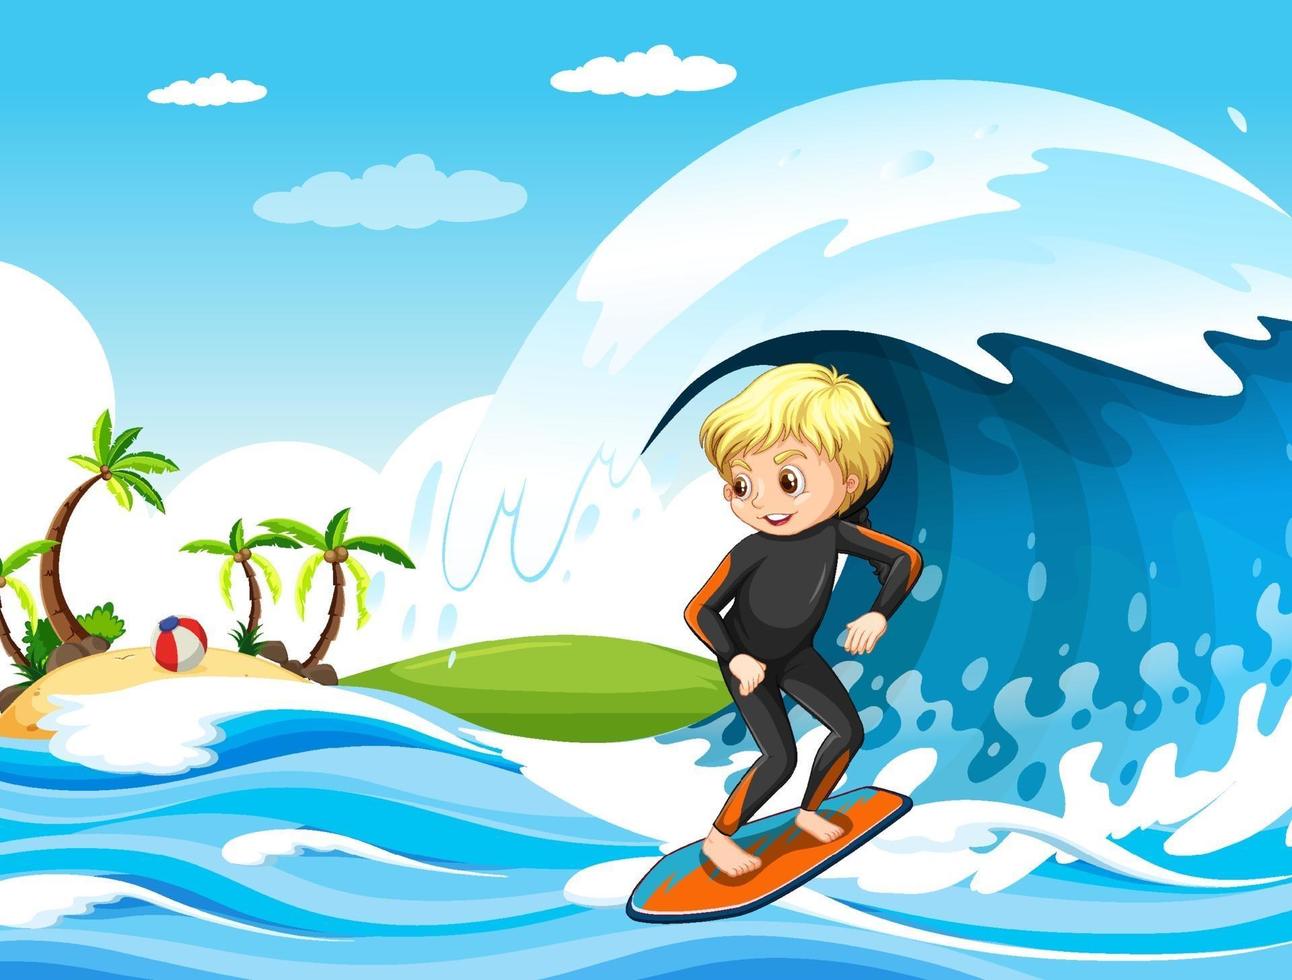 gran ola en la escena del océano con un niño de pie sobre una tabla de surf vector